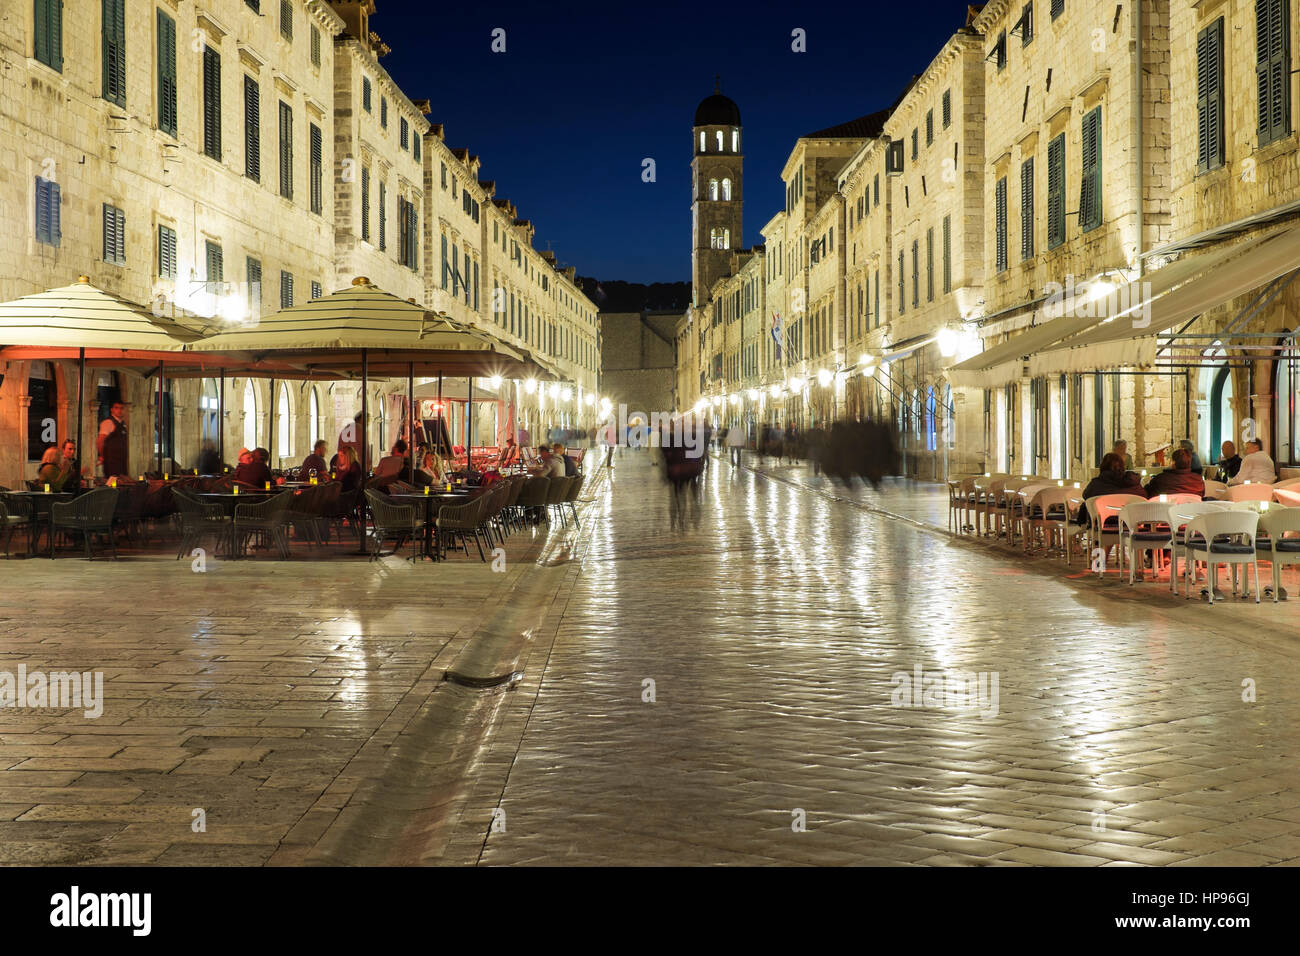 Menschen im Freien, Restaurants und Bars in der Nähe der Glockenturm, Luza-Platz, Stradum (Placa), am frühen Abend, Dubrovnik, Kroatien Stockfoto